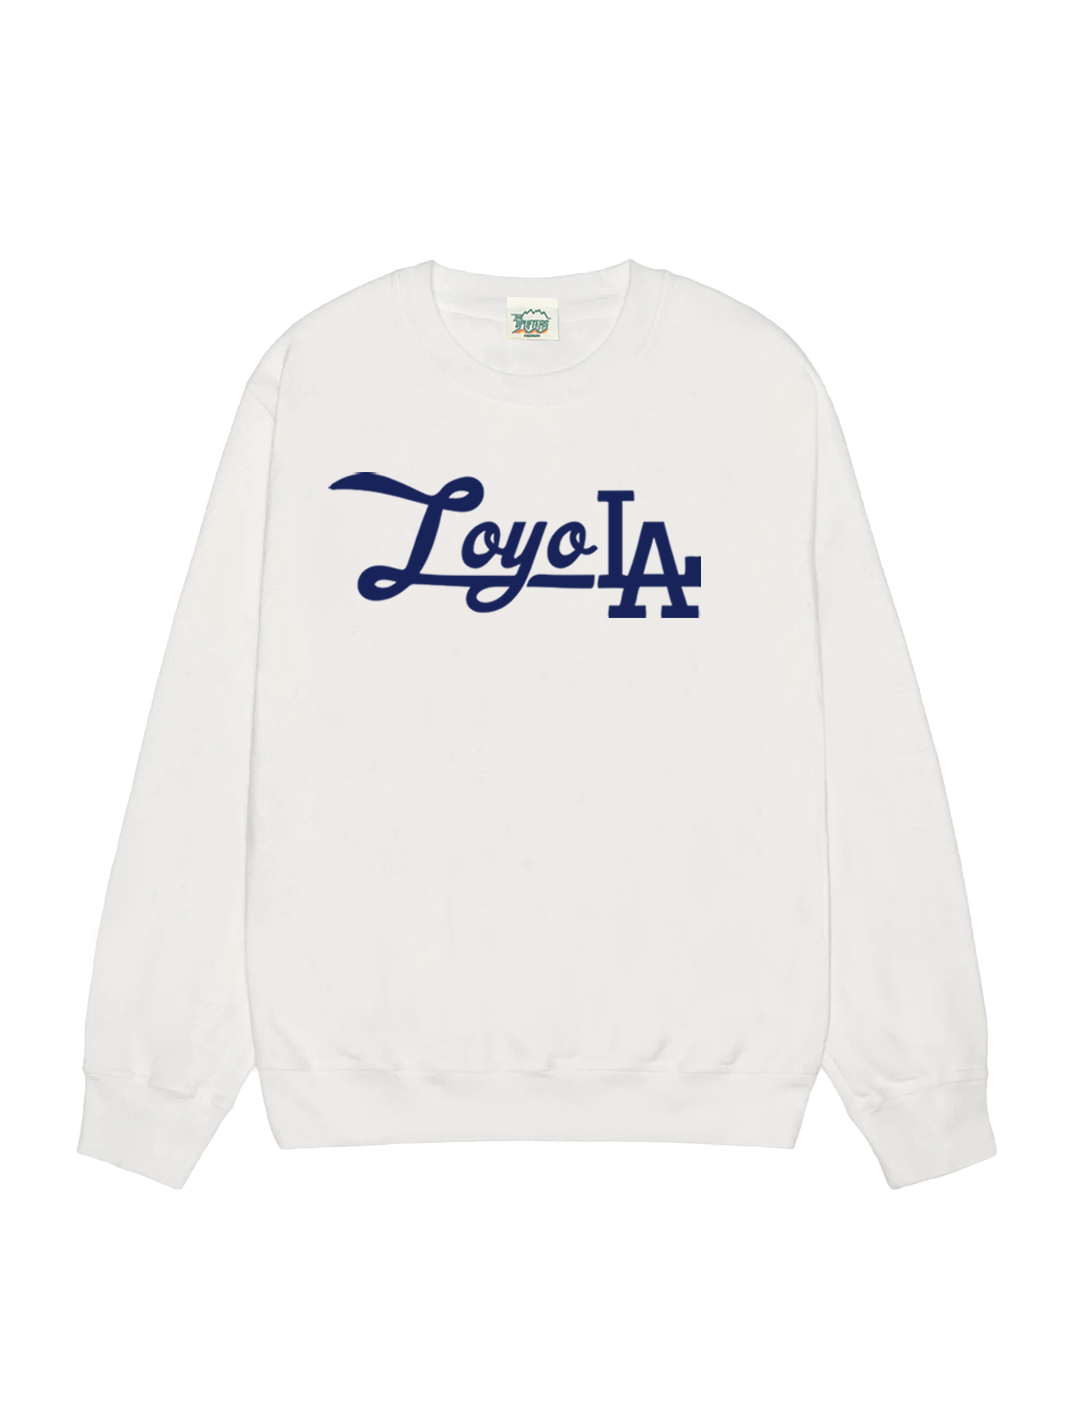 Loyola-whitesweatshirt.png